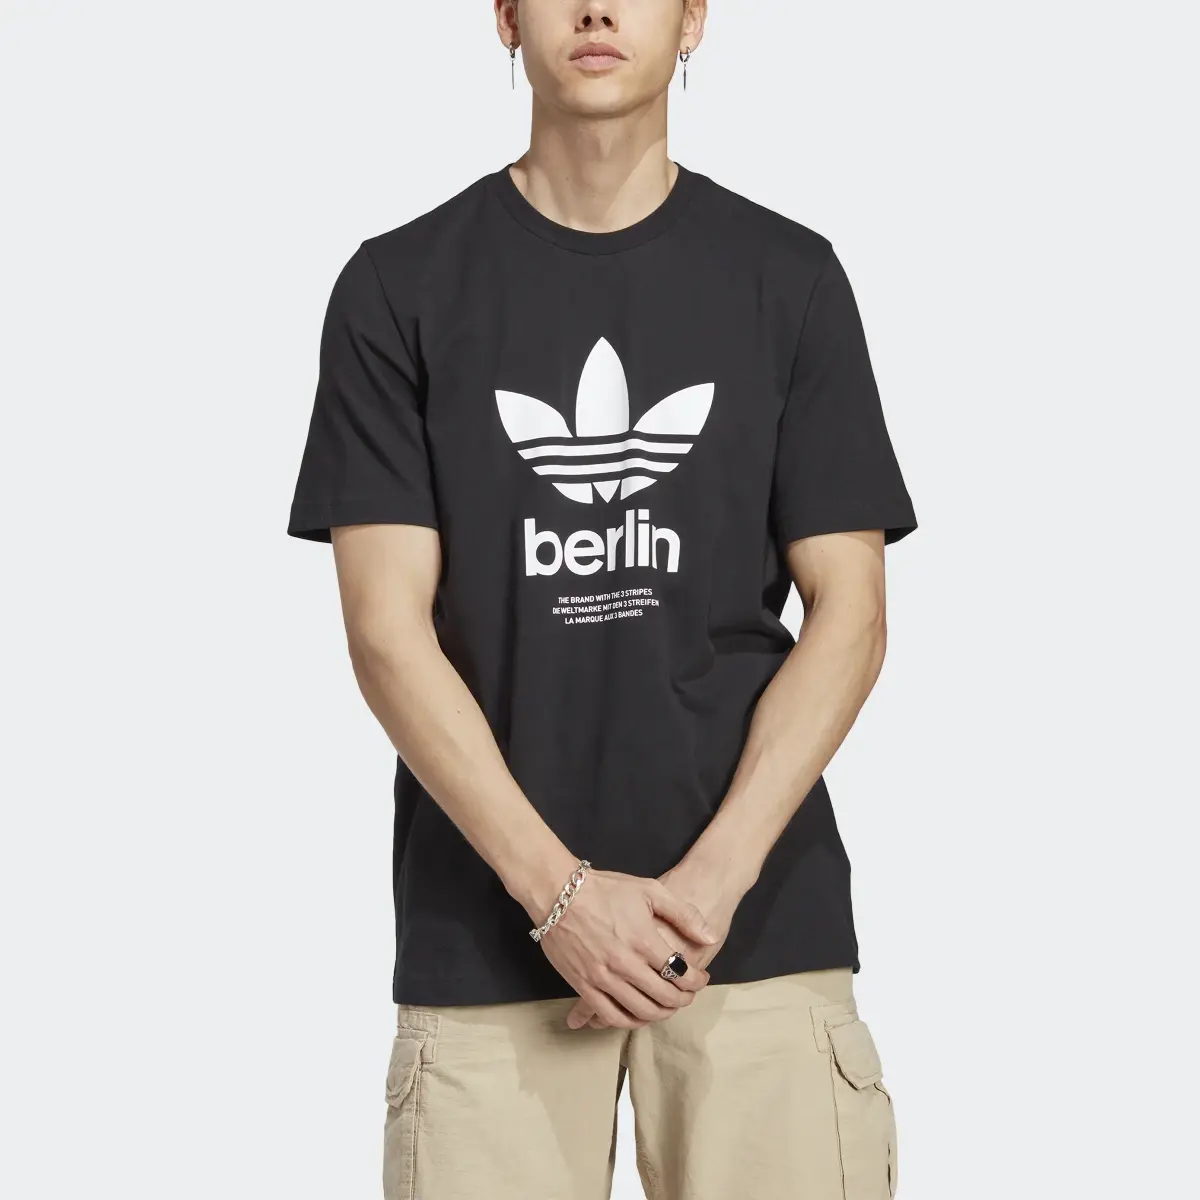 Adidas T-shirt Icone Berlin City Originals. 1